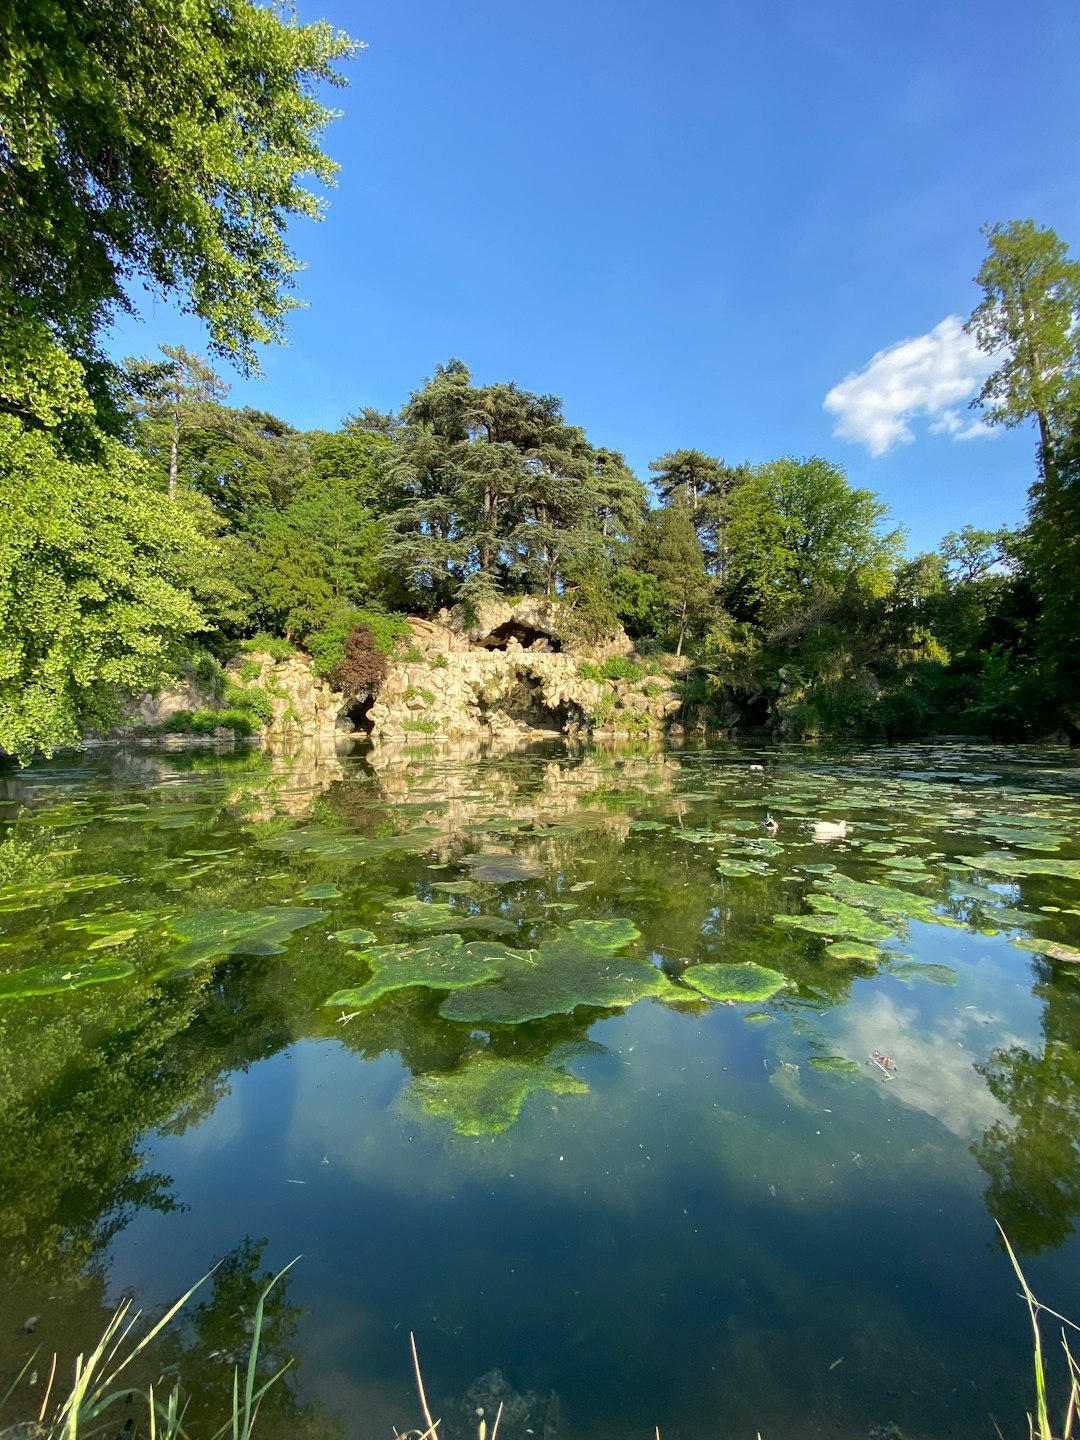 Nature reserve photo spot Bois de Boulogne Palace of Versailles